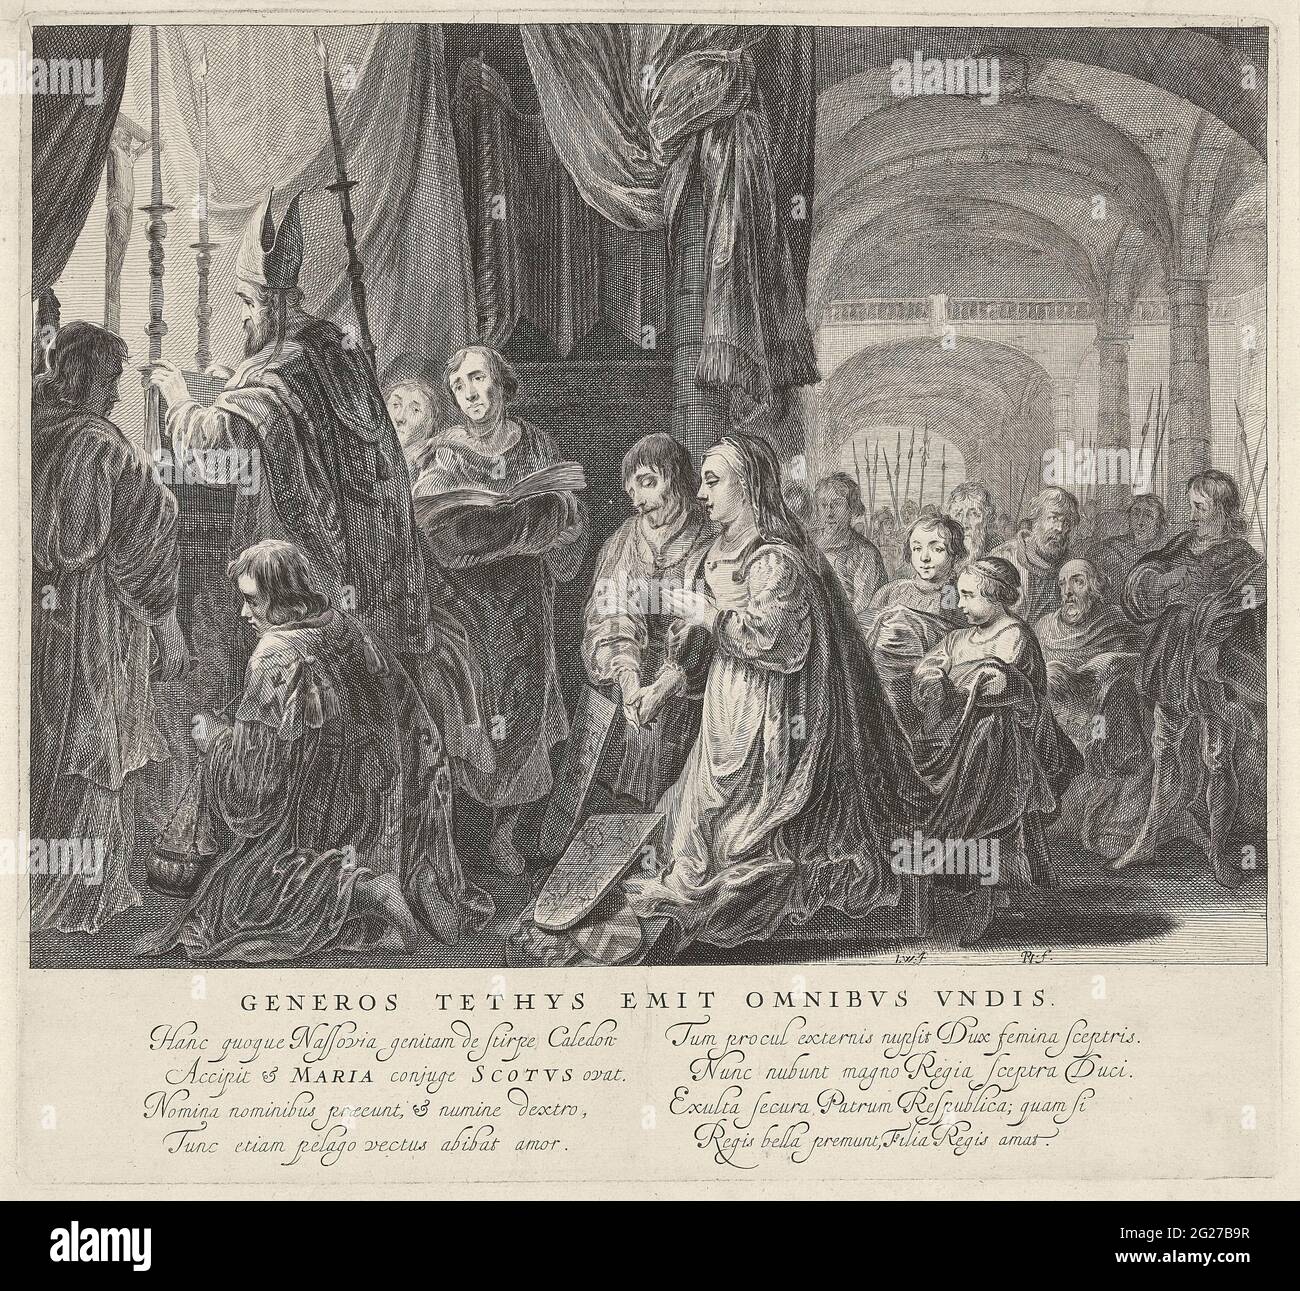 Tableau Vivant with the marriage of Jacobus II from Scotland with Maria van  Gelre-Egmond in 1449; Generos tethys emit omnibus undis; Displays in the  visit of Queen Henrietta Maria van England. Allegoric